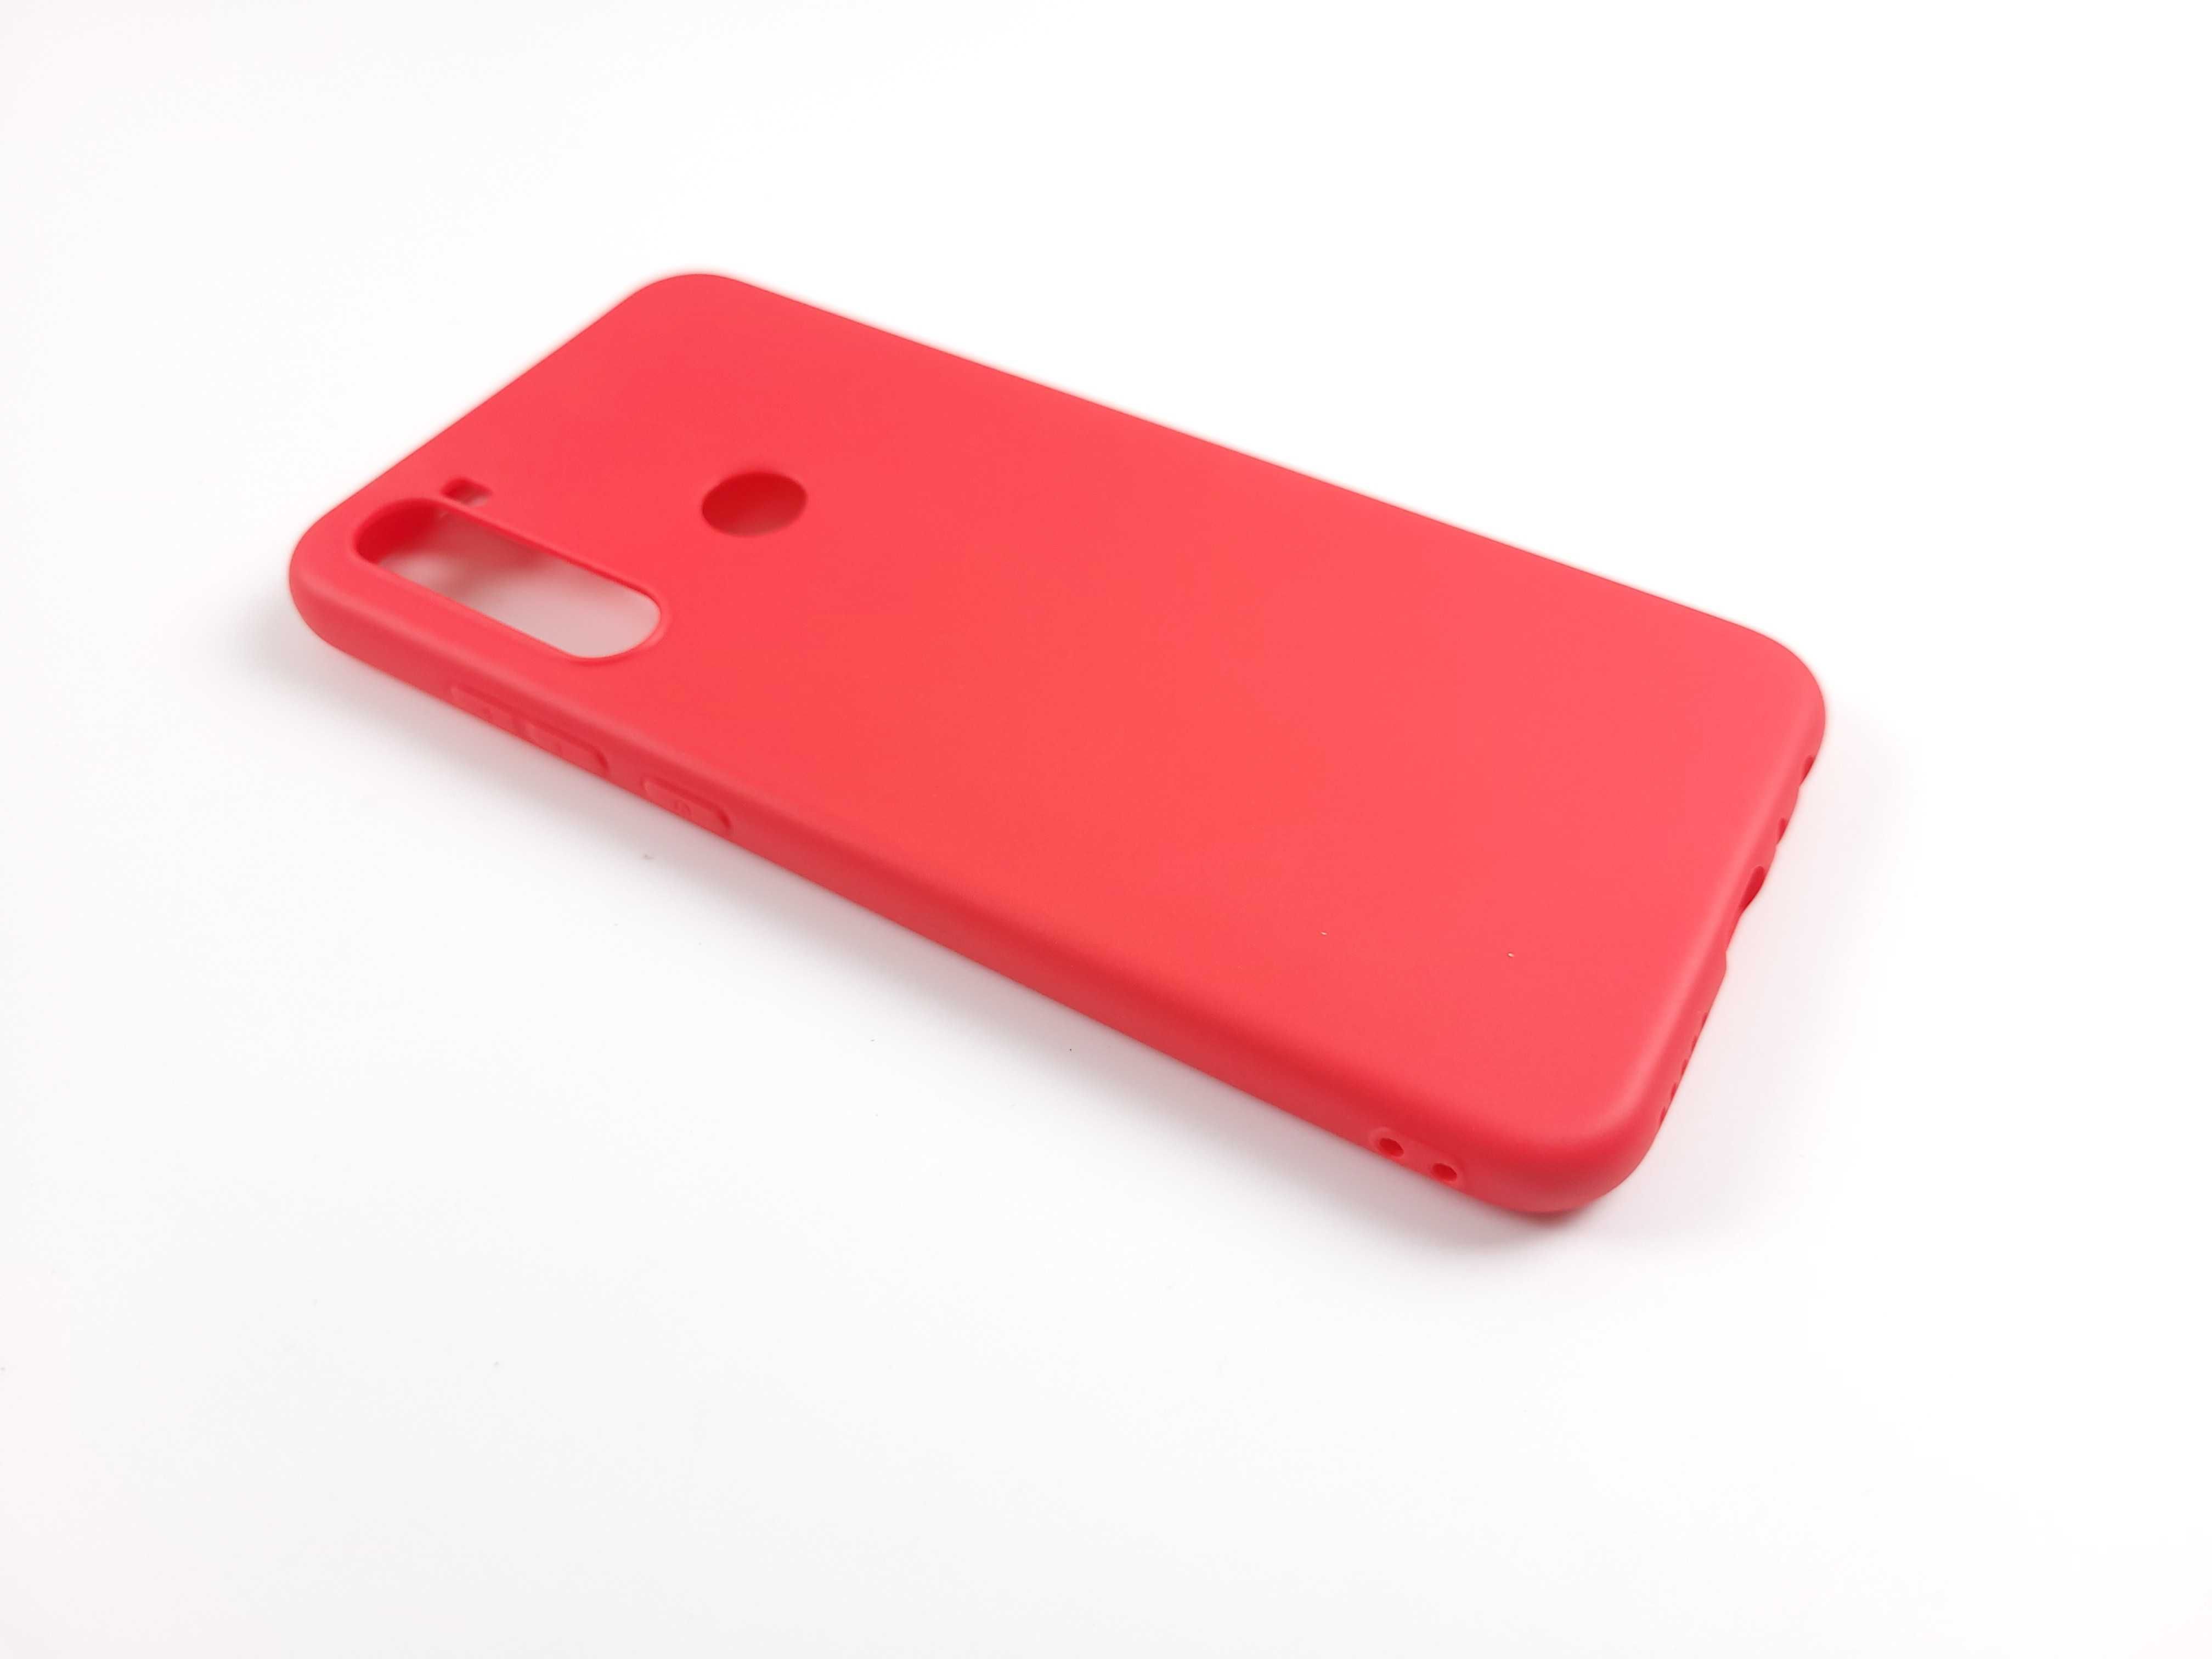 Etui Xiaomi Redmi Note 8T - Cena za zestaw 8 sztuk